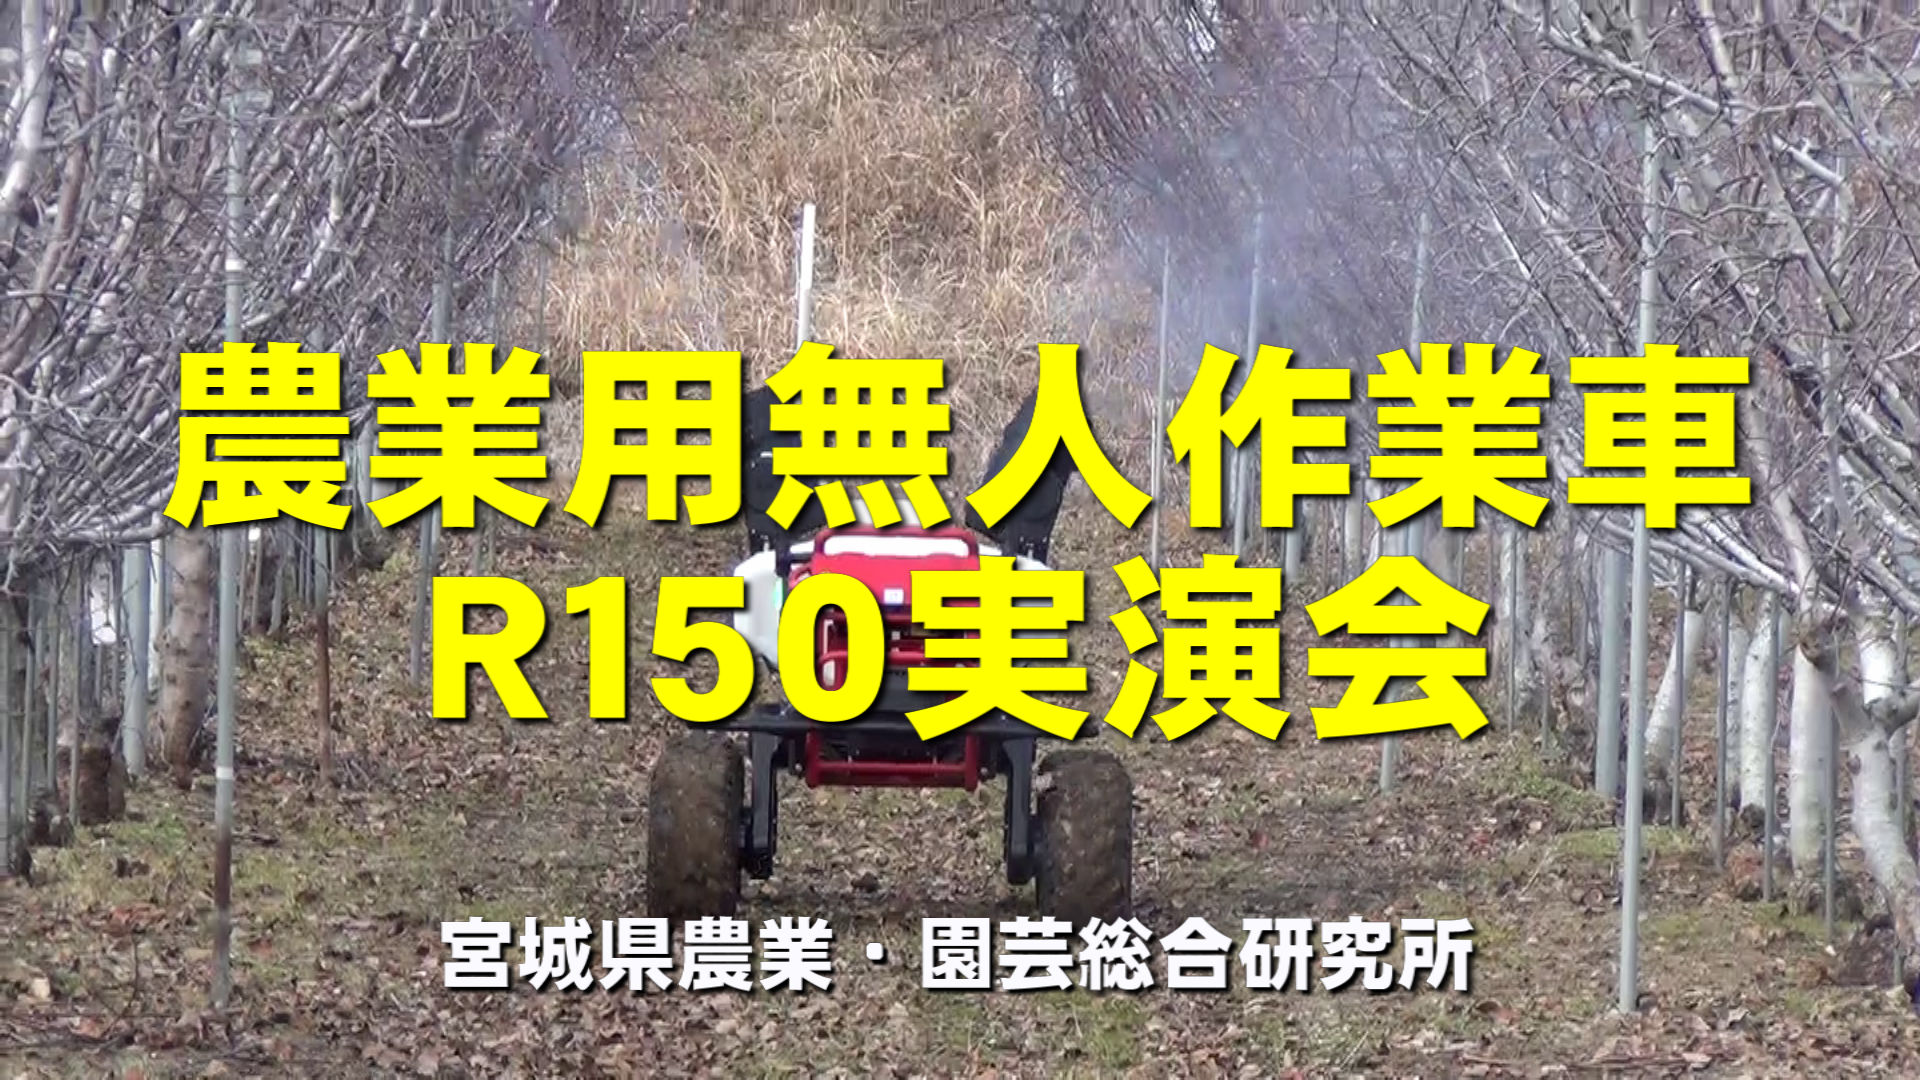 農業用無人作業車R150実演会動画画面